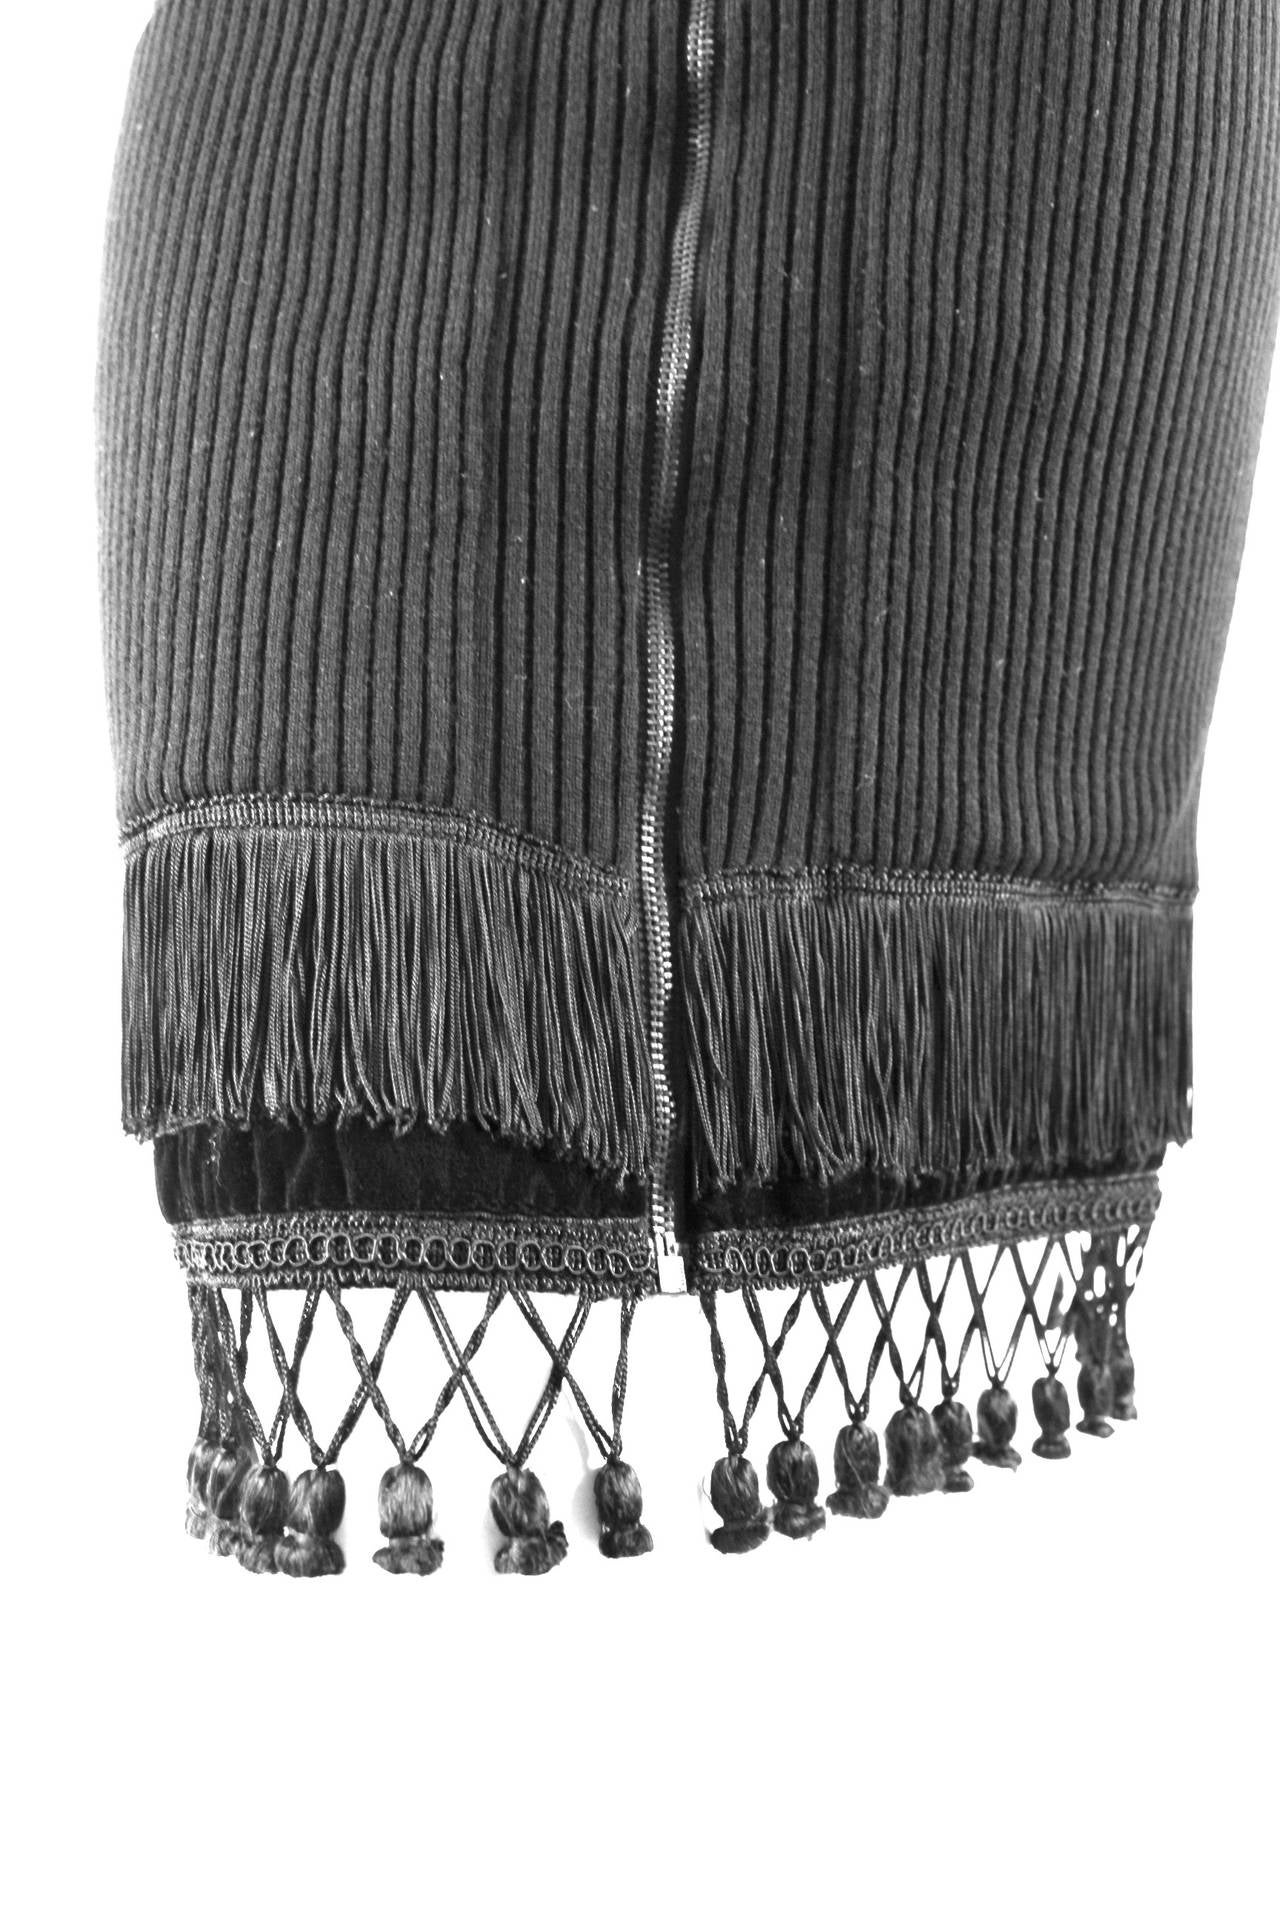 Jean Paul Gaultier for Equator Wool and Velvet fringe and Tassel Skirt 1